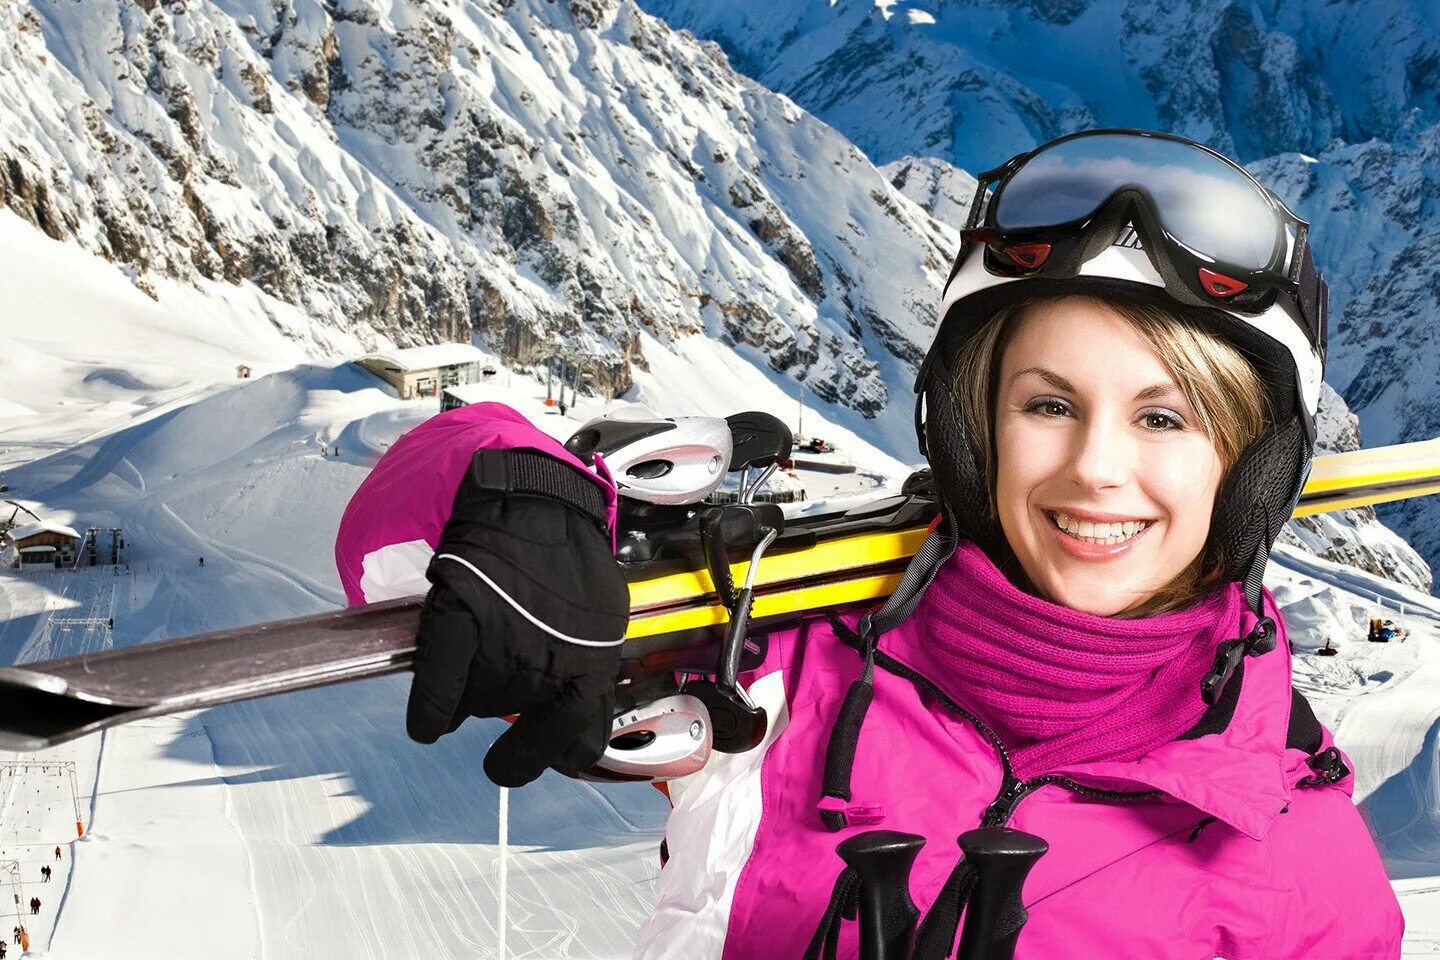 Девушка на горных лыжах. Девушка на горнолыжном курорте. Девушка в горнолыжном костюме. Девушка на лыжах в горах.